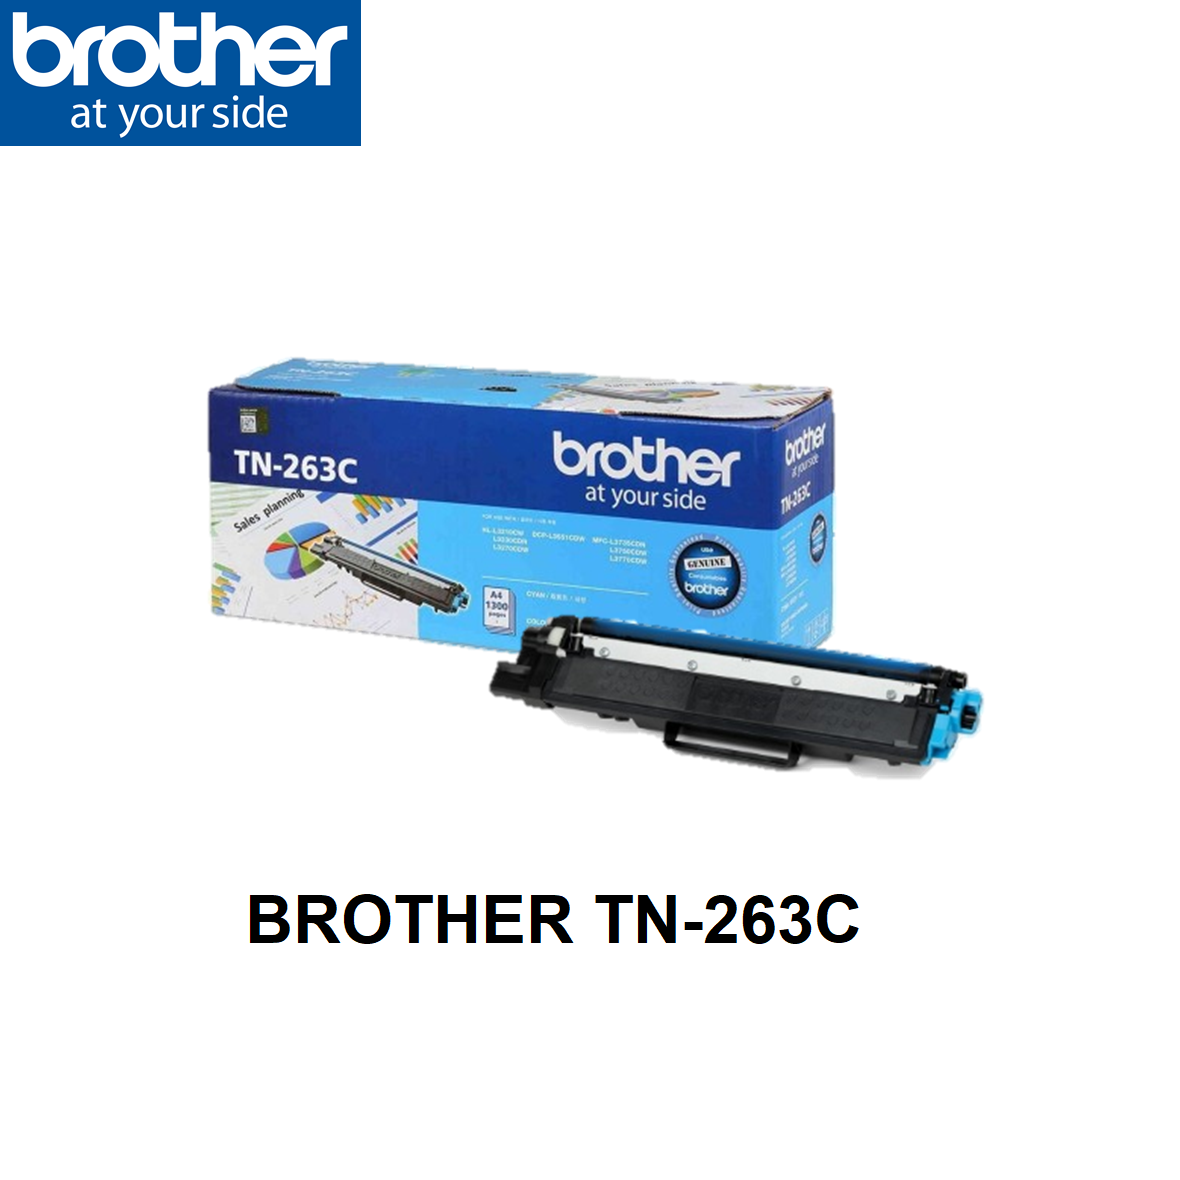 Toner Bank 6-Pack Compatible Toner Cartridge for Brother TN-1060 HL-1110  1112R 1210W 1212W MFC-1810E 1815R 1910W DCP-1510R 1512R 1610W Printer Ink  Black 